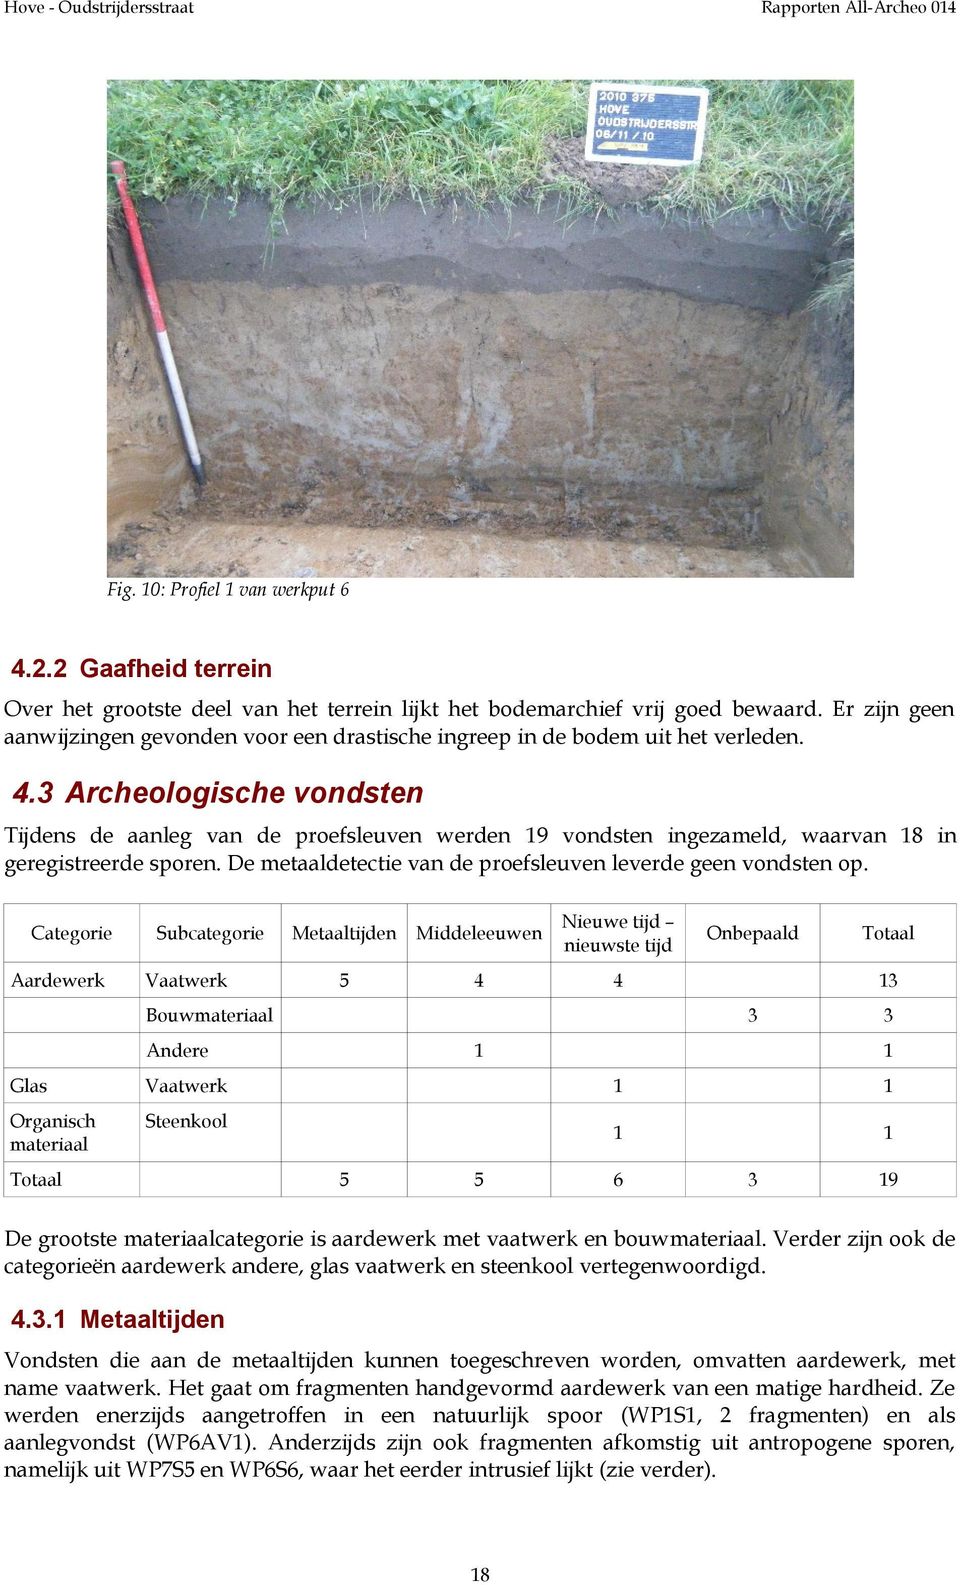 3 Archeologische vondsten Tijdens de aanleg van de proefsleuven werden 19 vondsten ingezameld, waarvan 18 in geregistreerde sporen. De metaaldetectie van de proefsleuven leverde geen vondsten op.